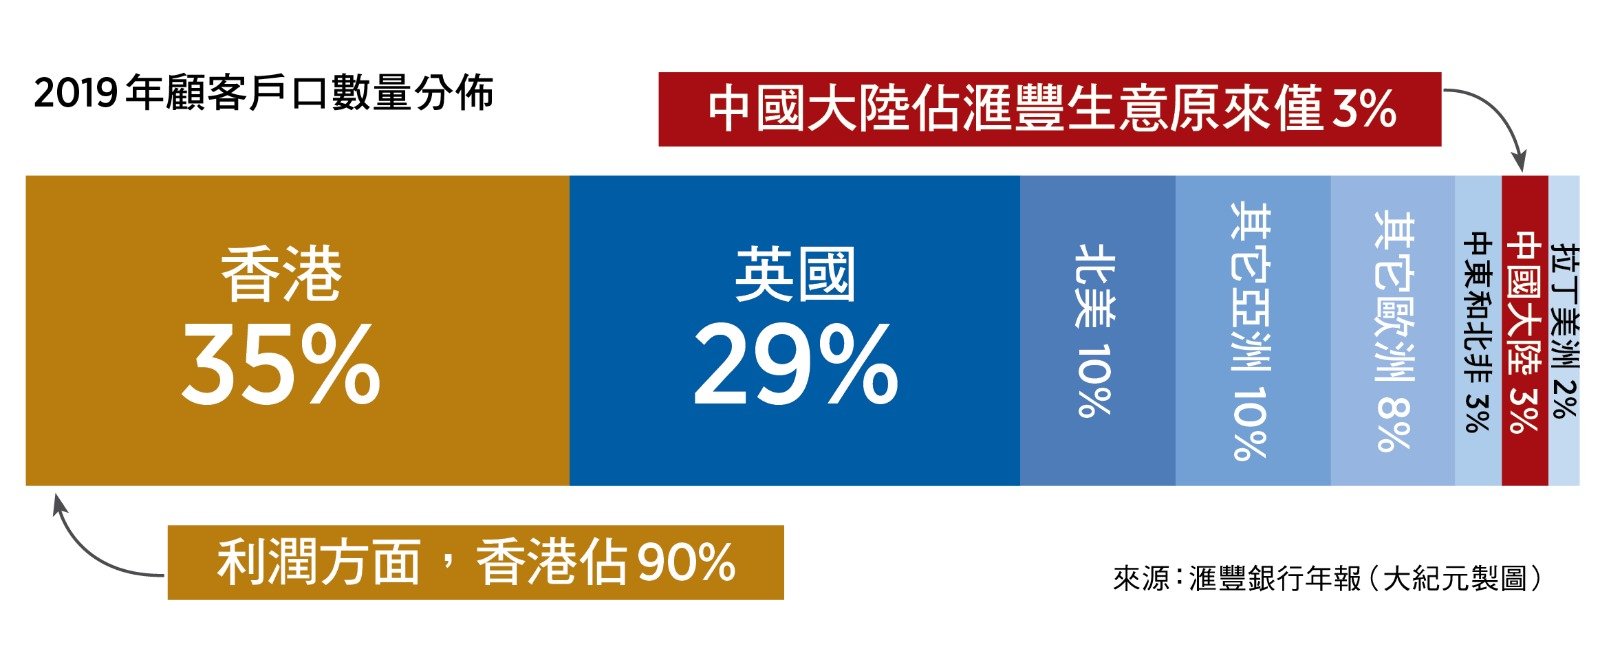 滙豐銀行2019年顧客戶口數量分佈，中國大陸佔滙豐生意原來僅3%（來源：滙豐銀行年報／大紀元製圖）